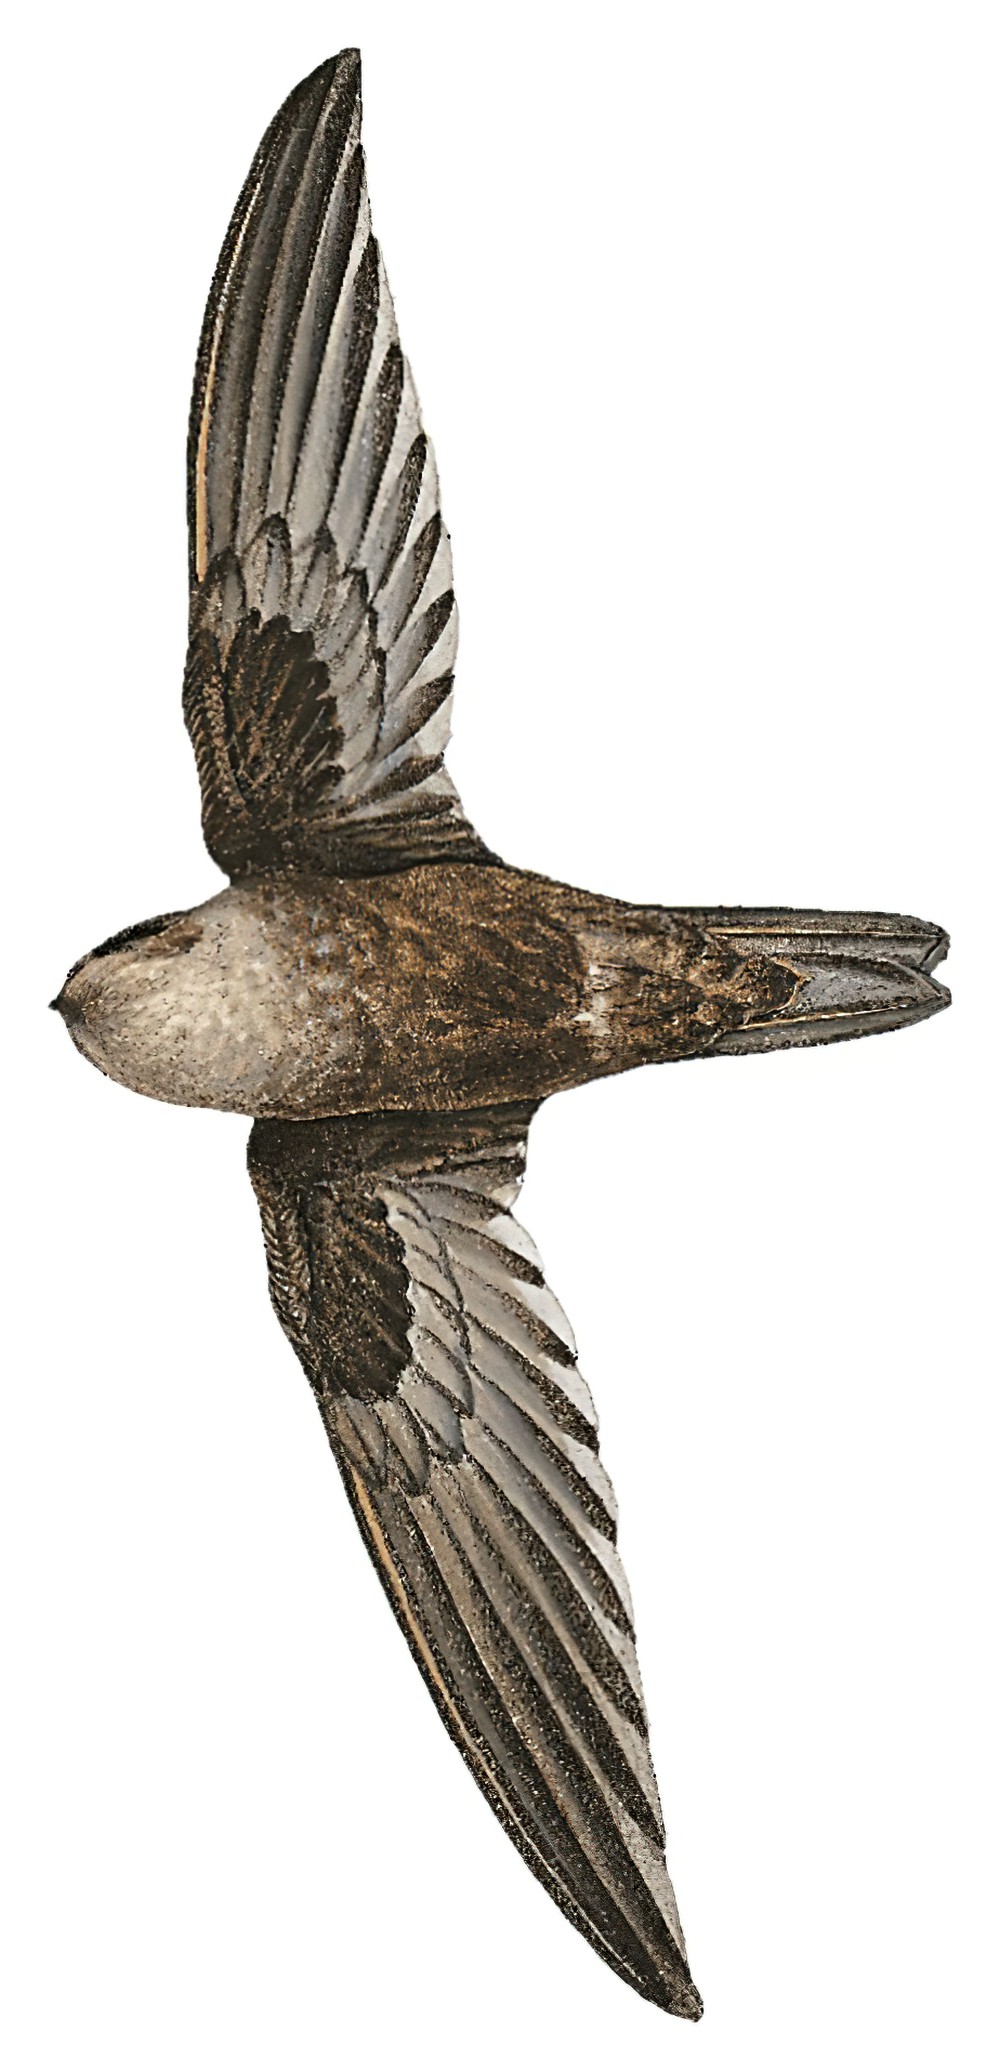 Mossy-nest Swiftlet / Aerodramus salangana